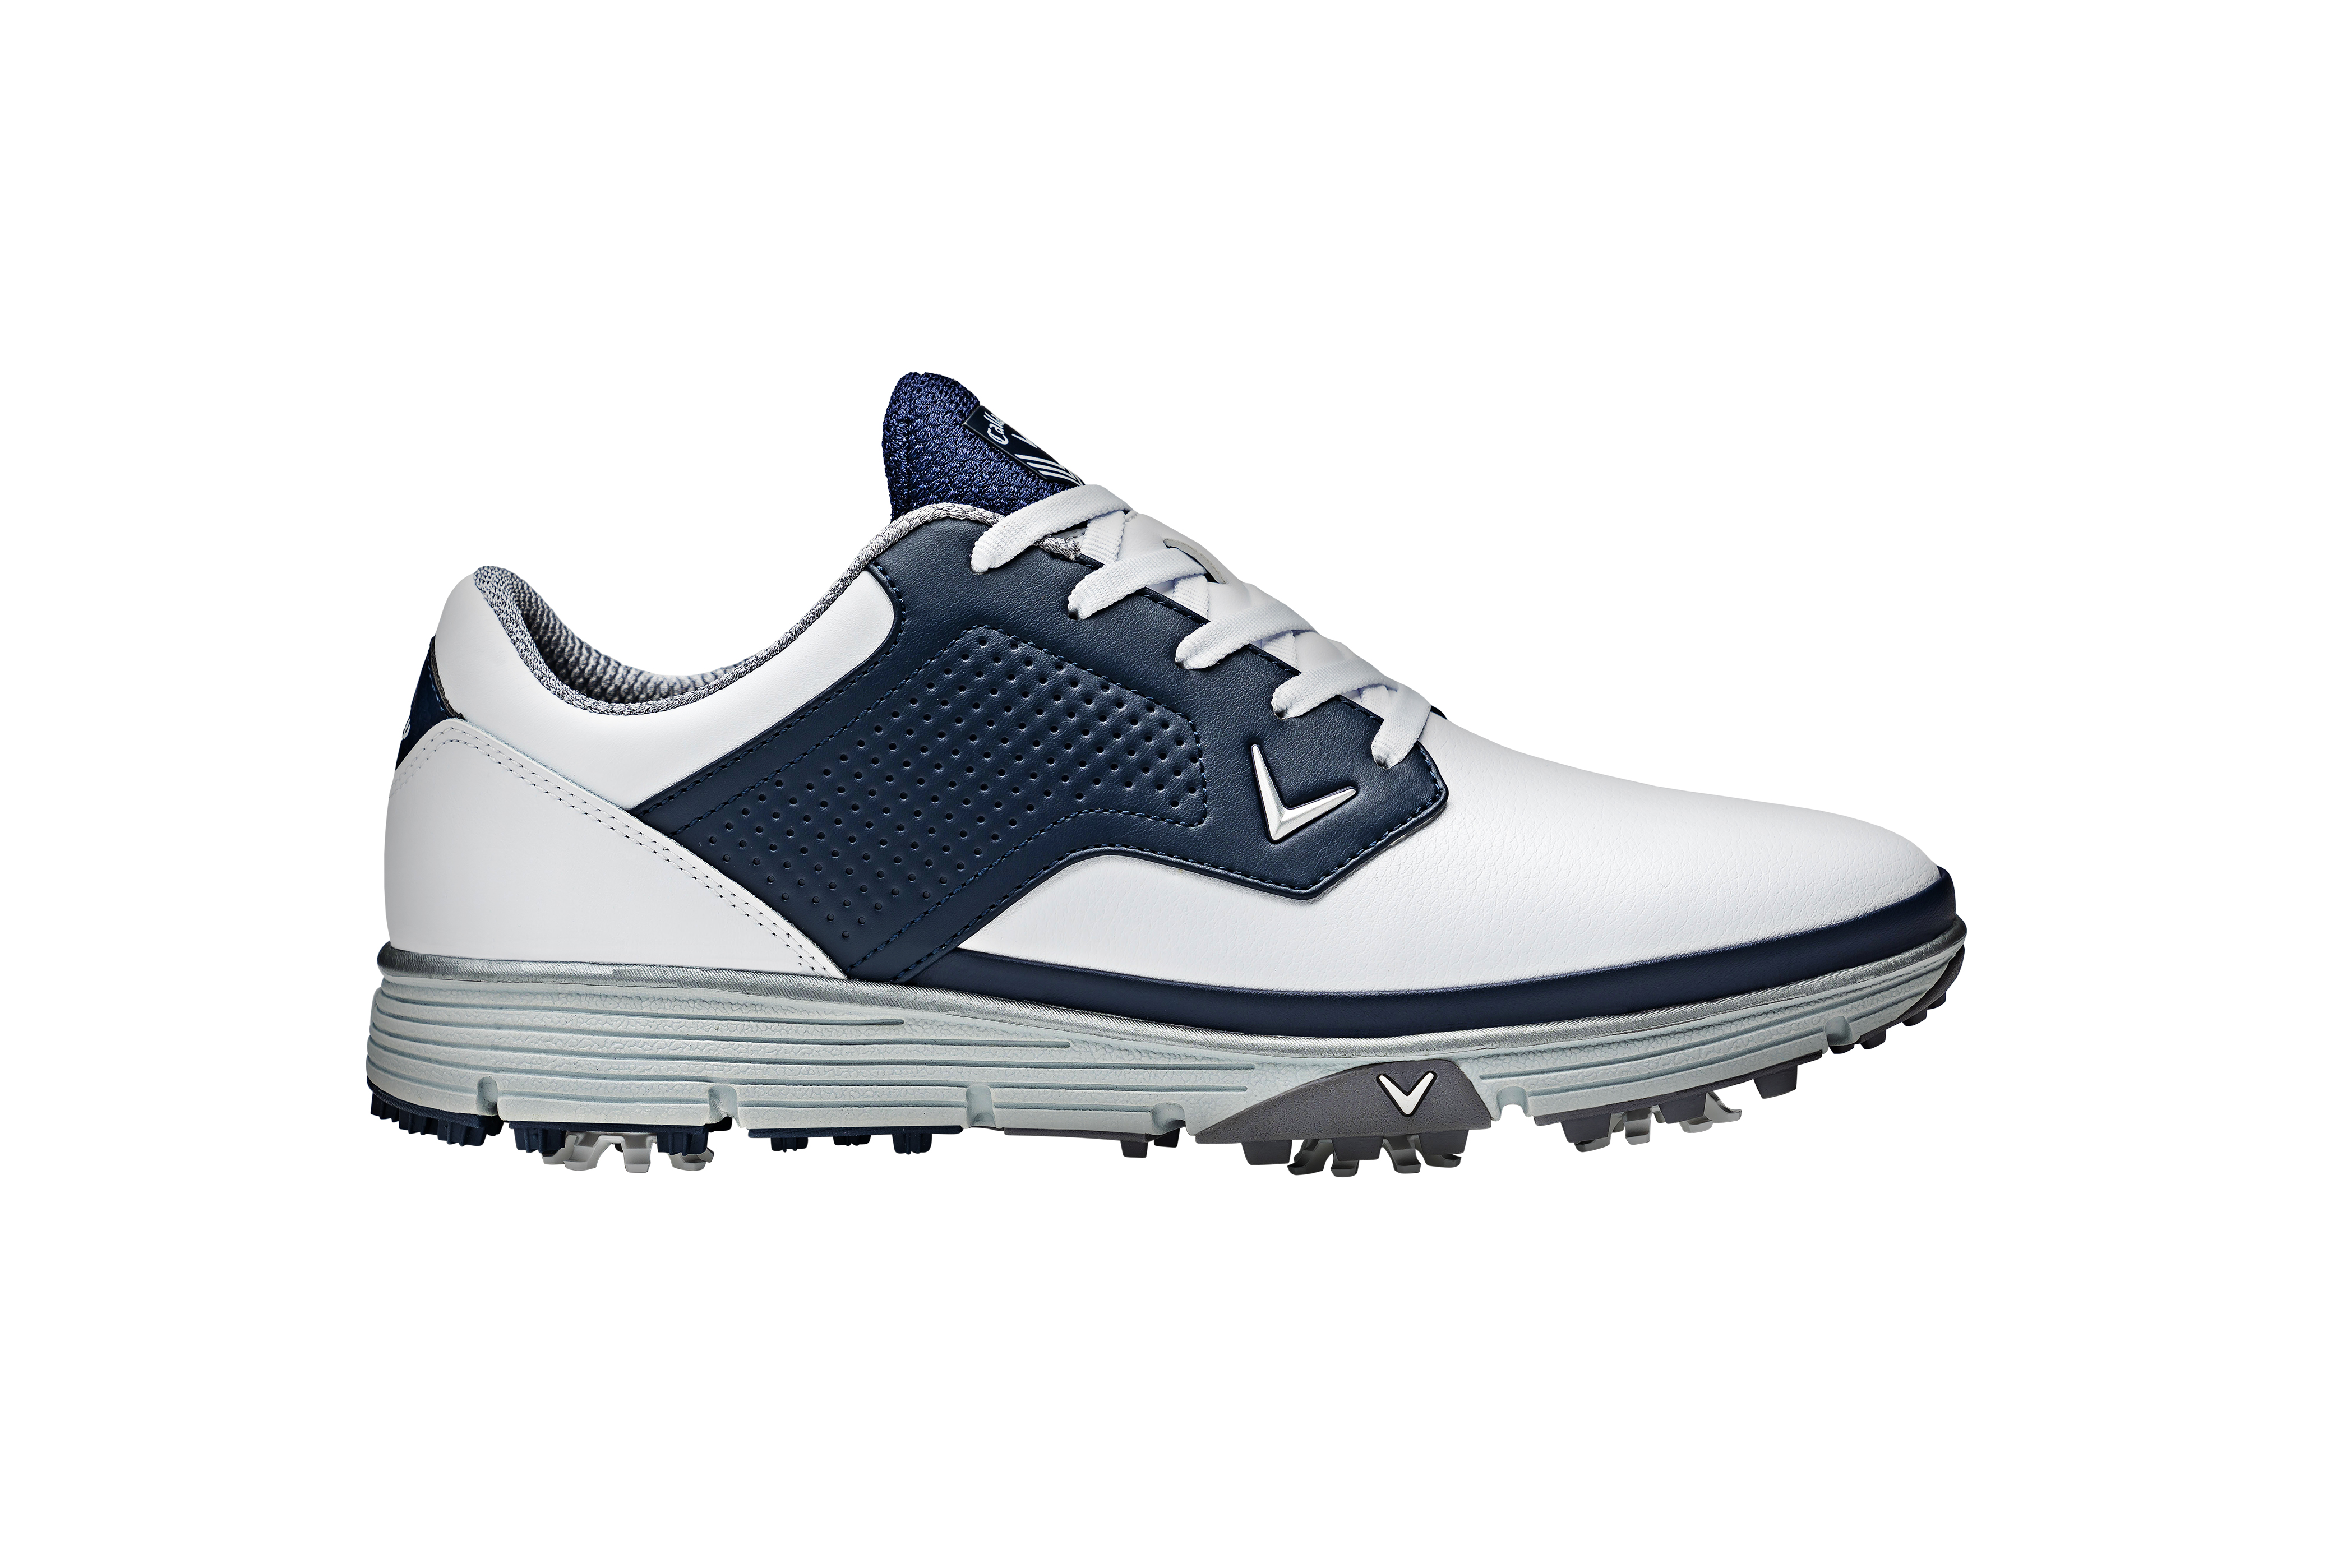 Callaway Mission pánské golfové boty, bílé/tmavě modré, vel. 10 UK